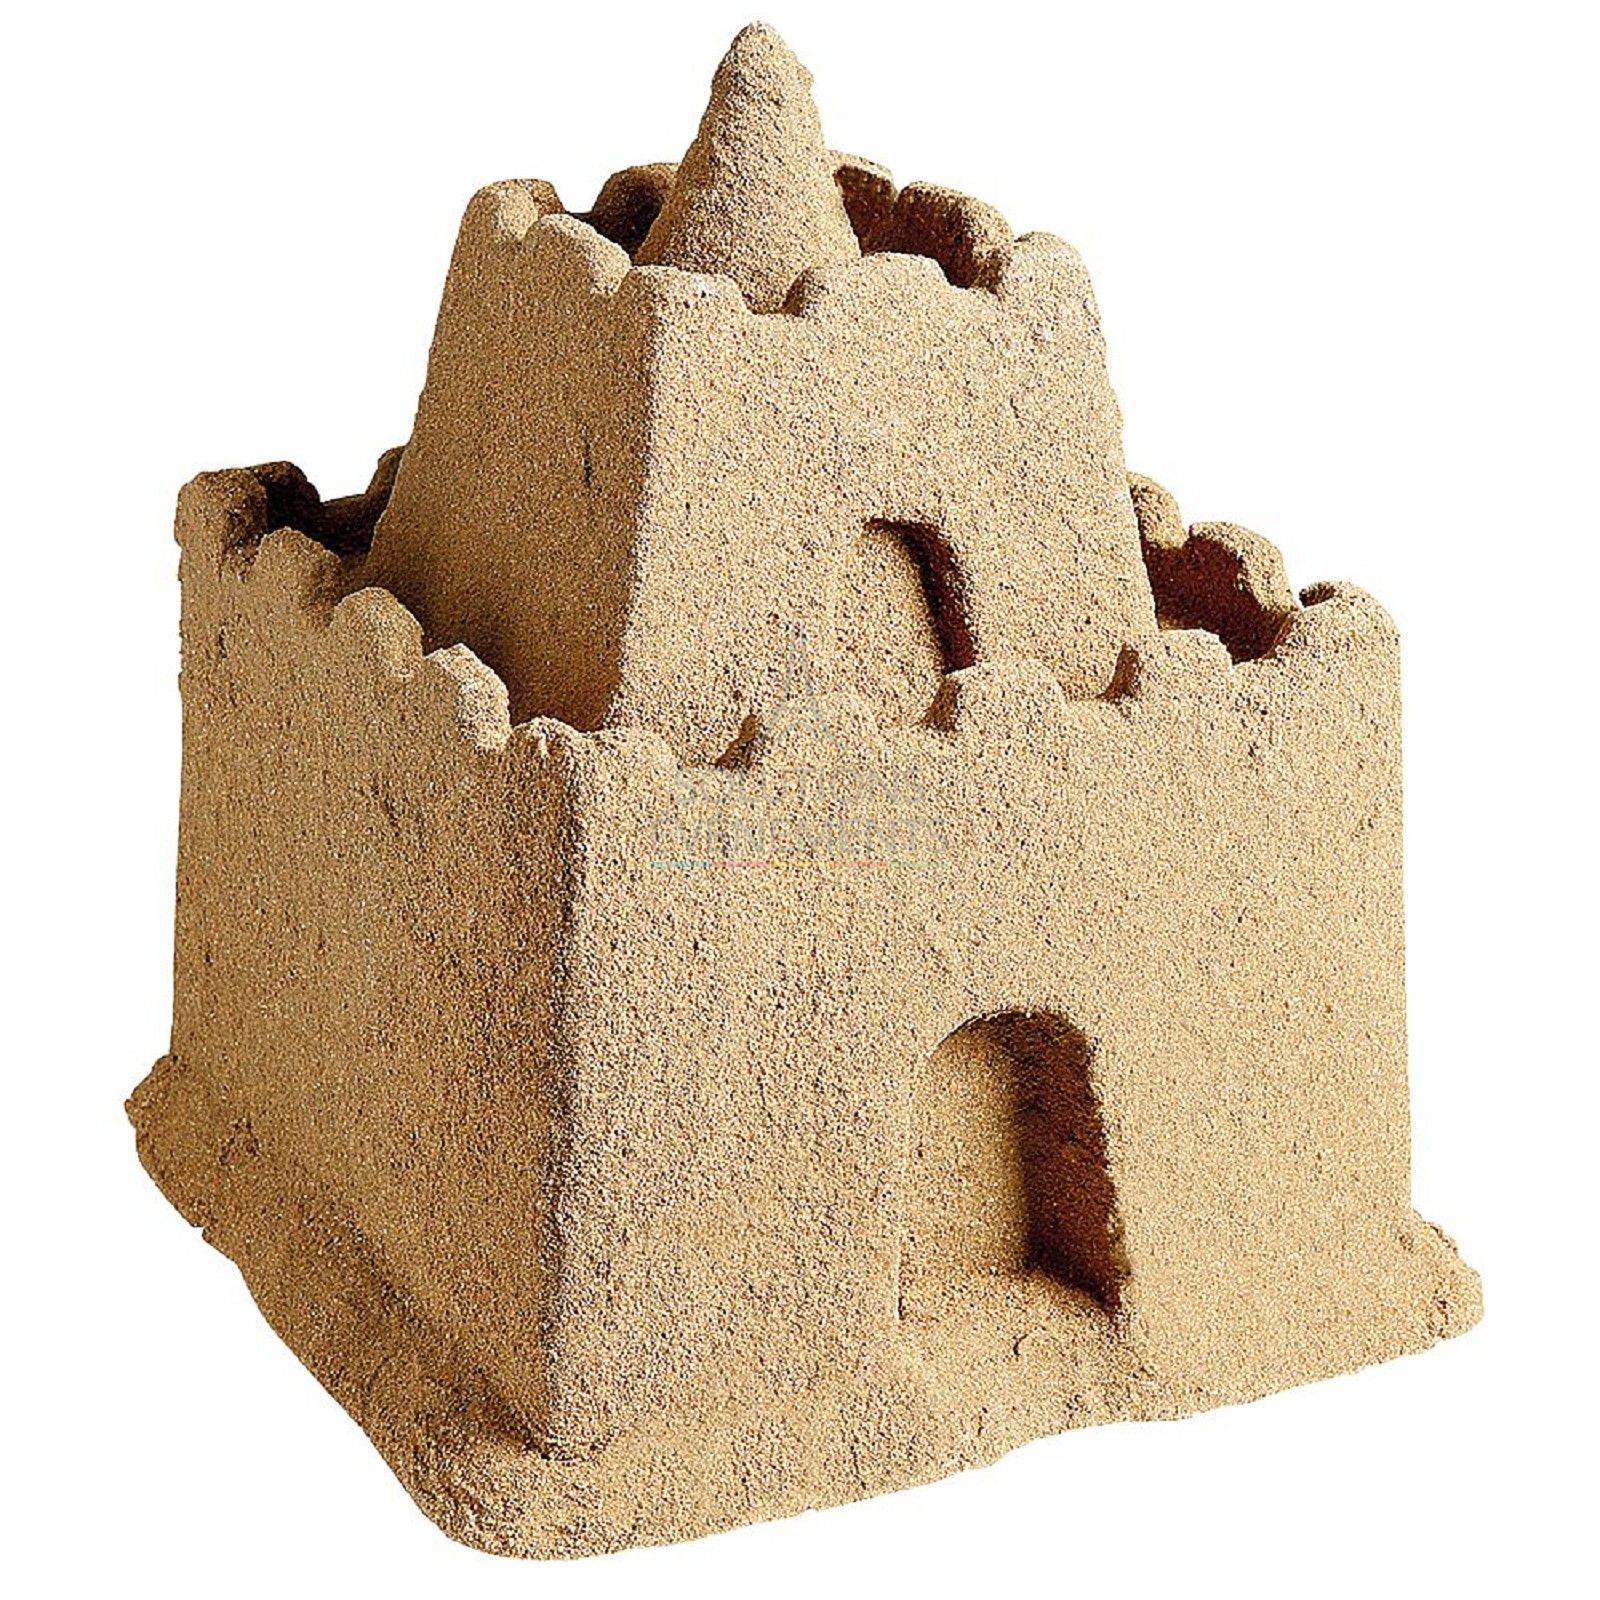 Fake sand castle decoration rental